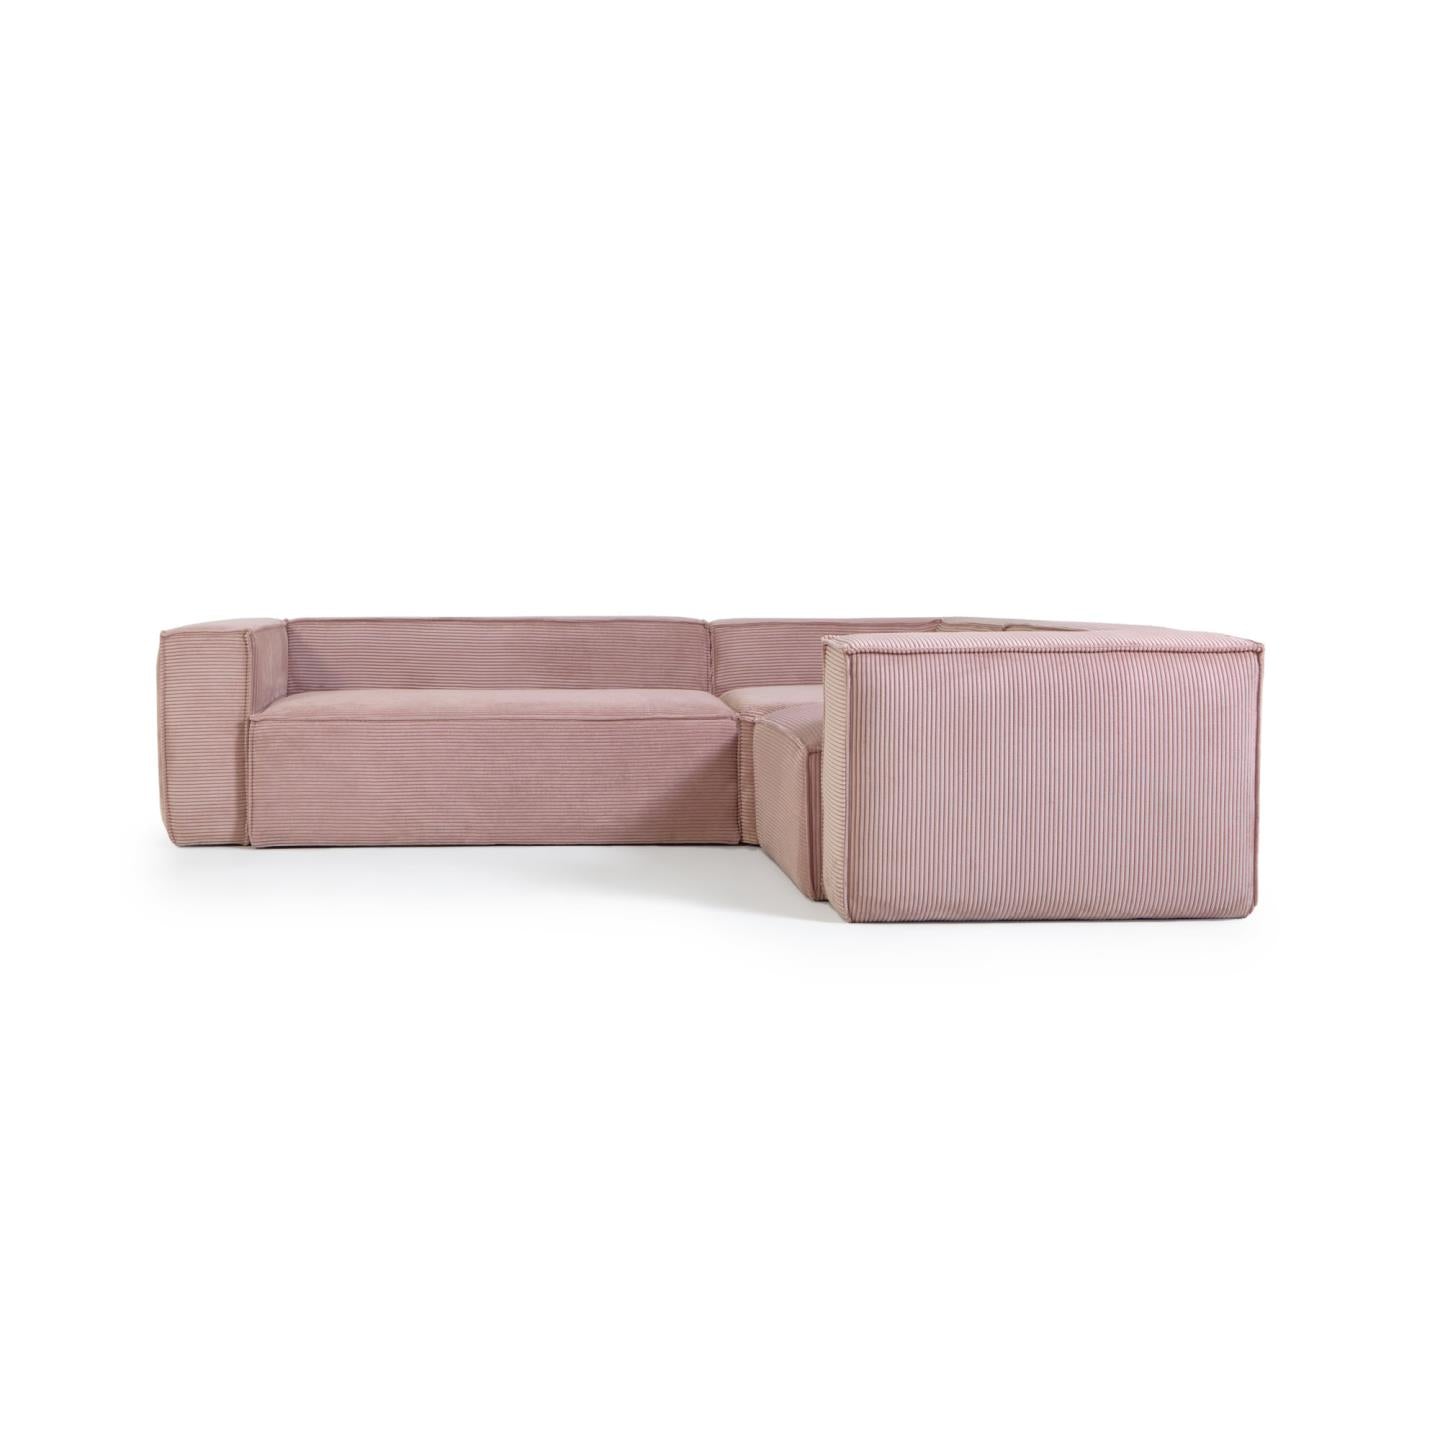 Blok 3 személyes sarokkanapé rózsaszín, széles varrású kordbársony, 290 x 230 cm / 230 cm 290 cm